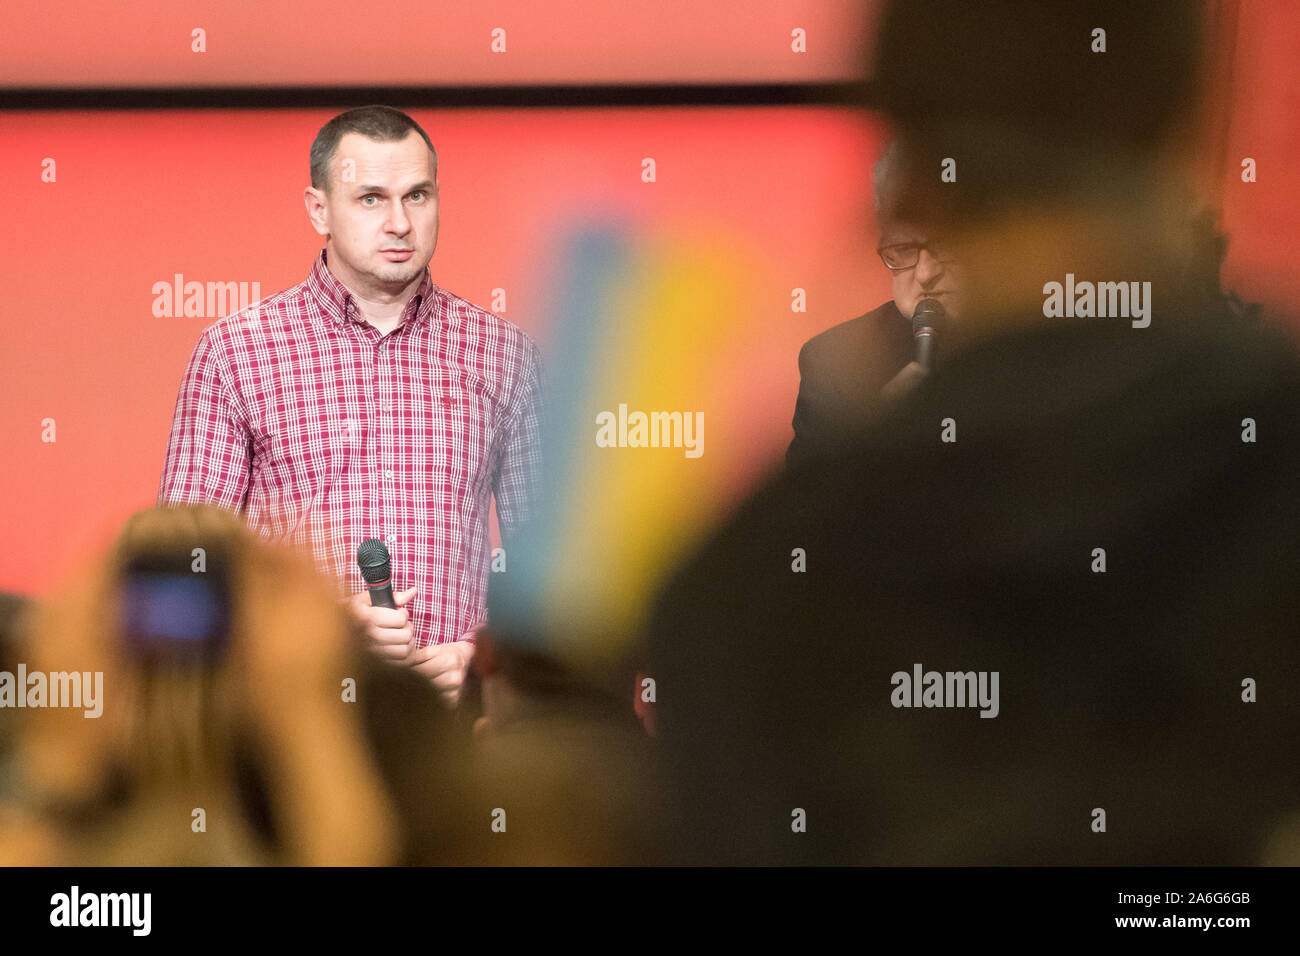 Oleg Sentsov, Ukrainien, cinéaste, écrivain et militant de la Crimée, à Gdansk, Pologne. 25 octobre 2019 © Wojciech Strozyk / Alamy Stock Photo Banque D'Images